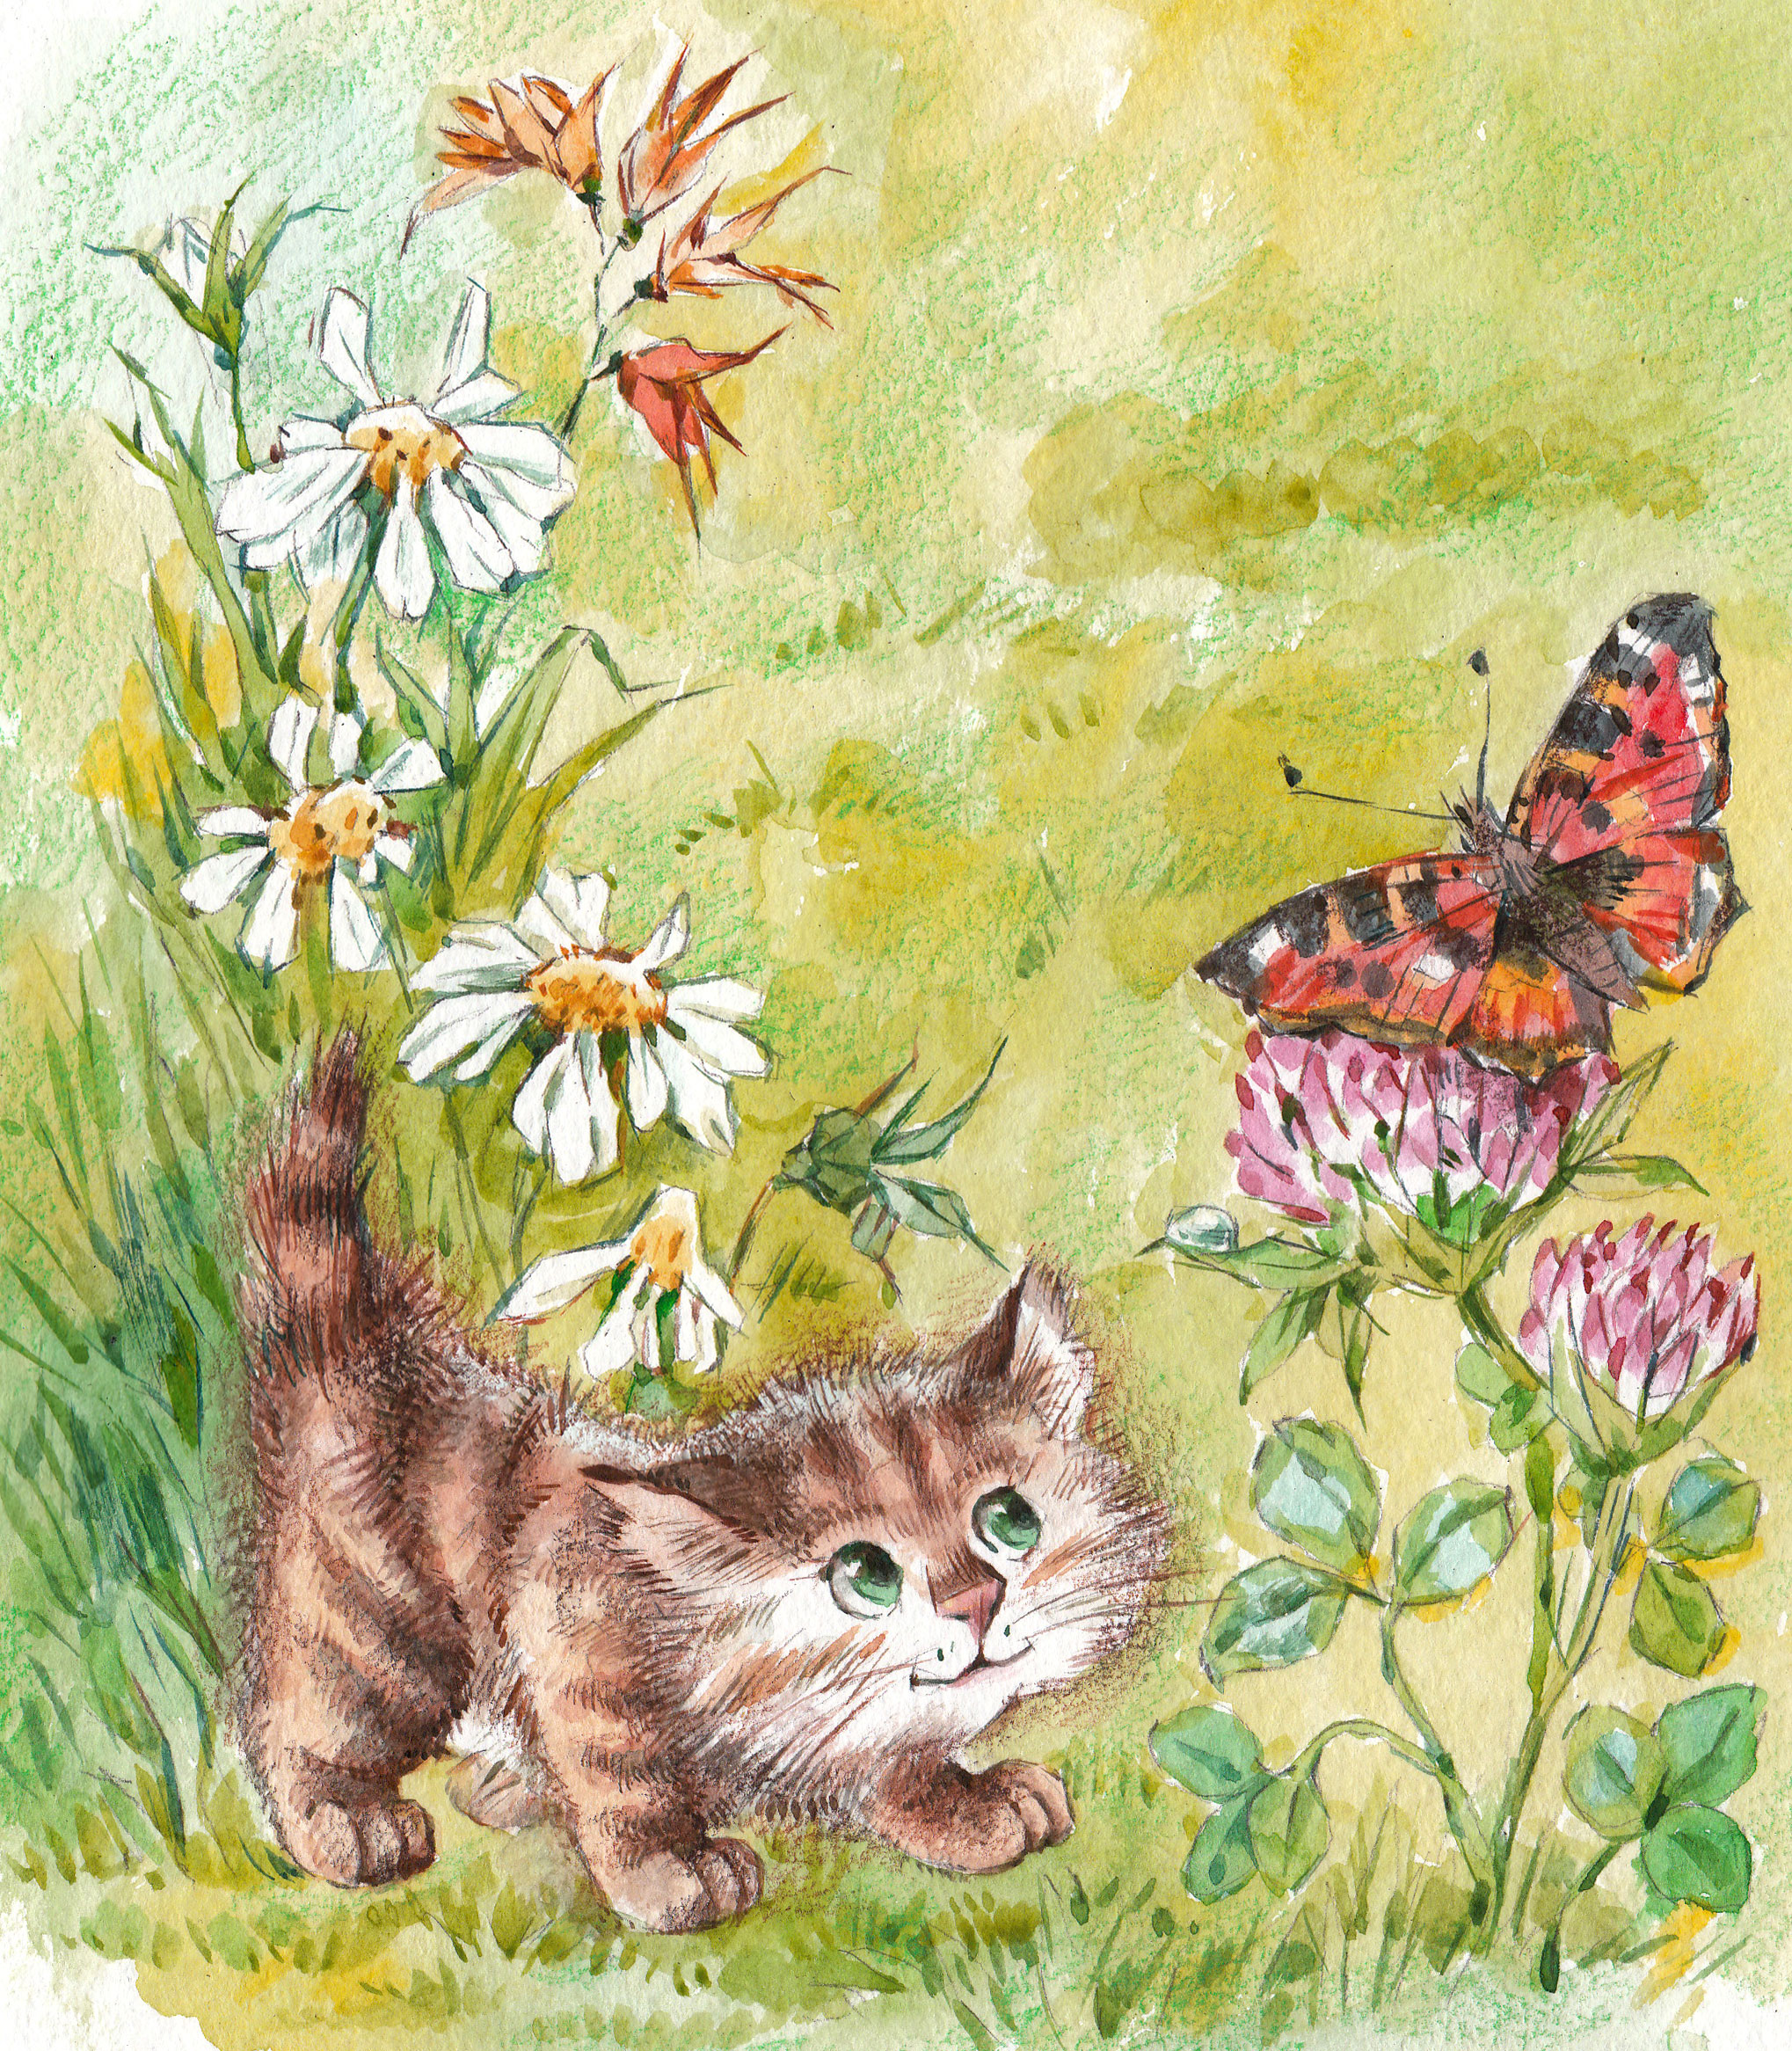 Картинка весеннее доброе утро с детьми. Кошка с бабочками. Котенок с бабочкой. Кот в бабочке с цветами. Открытки с весной.